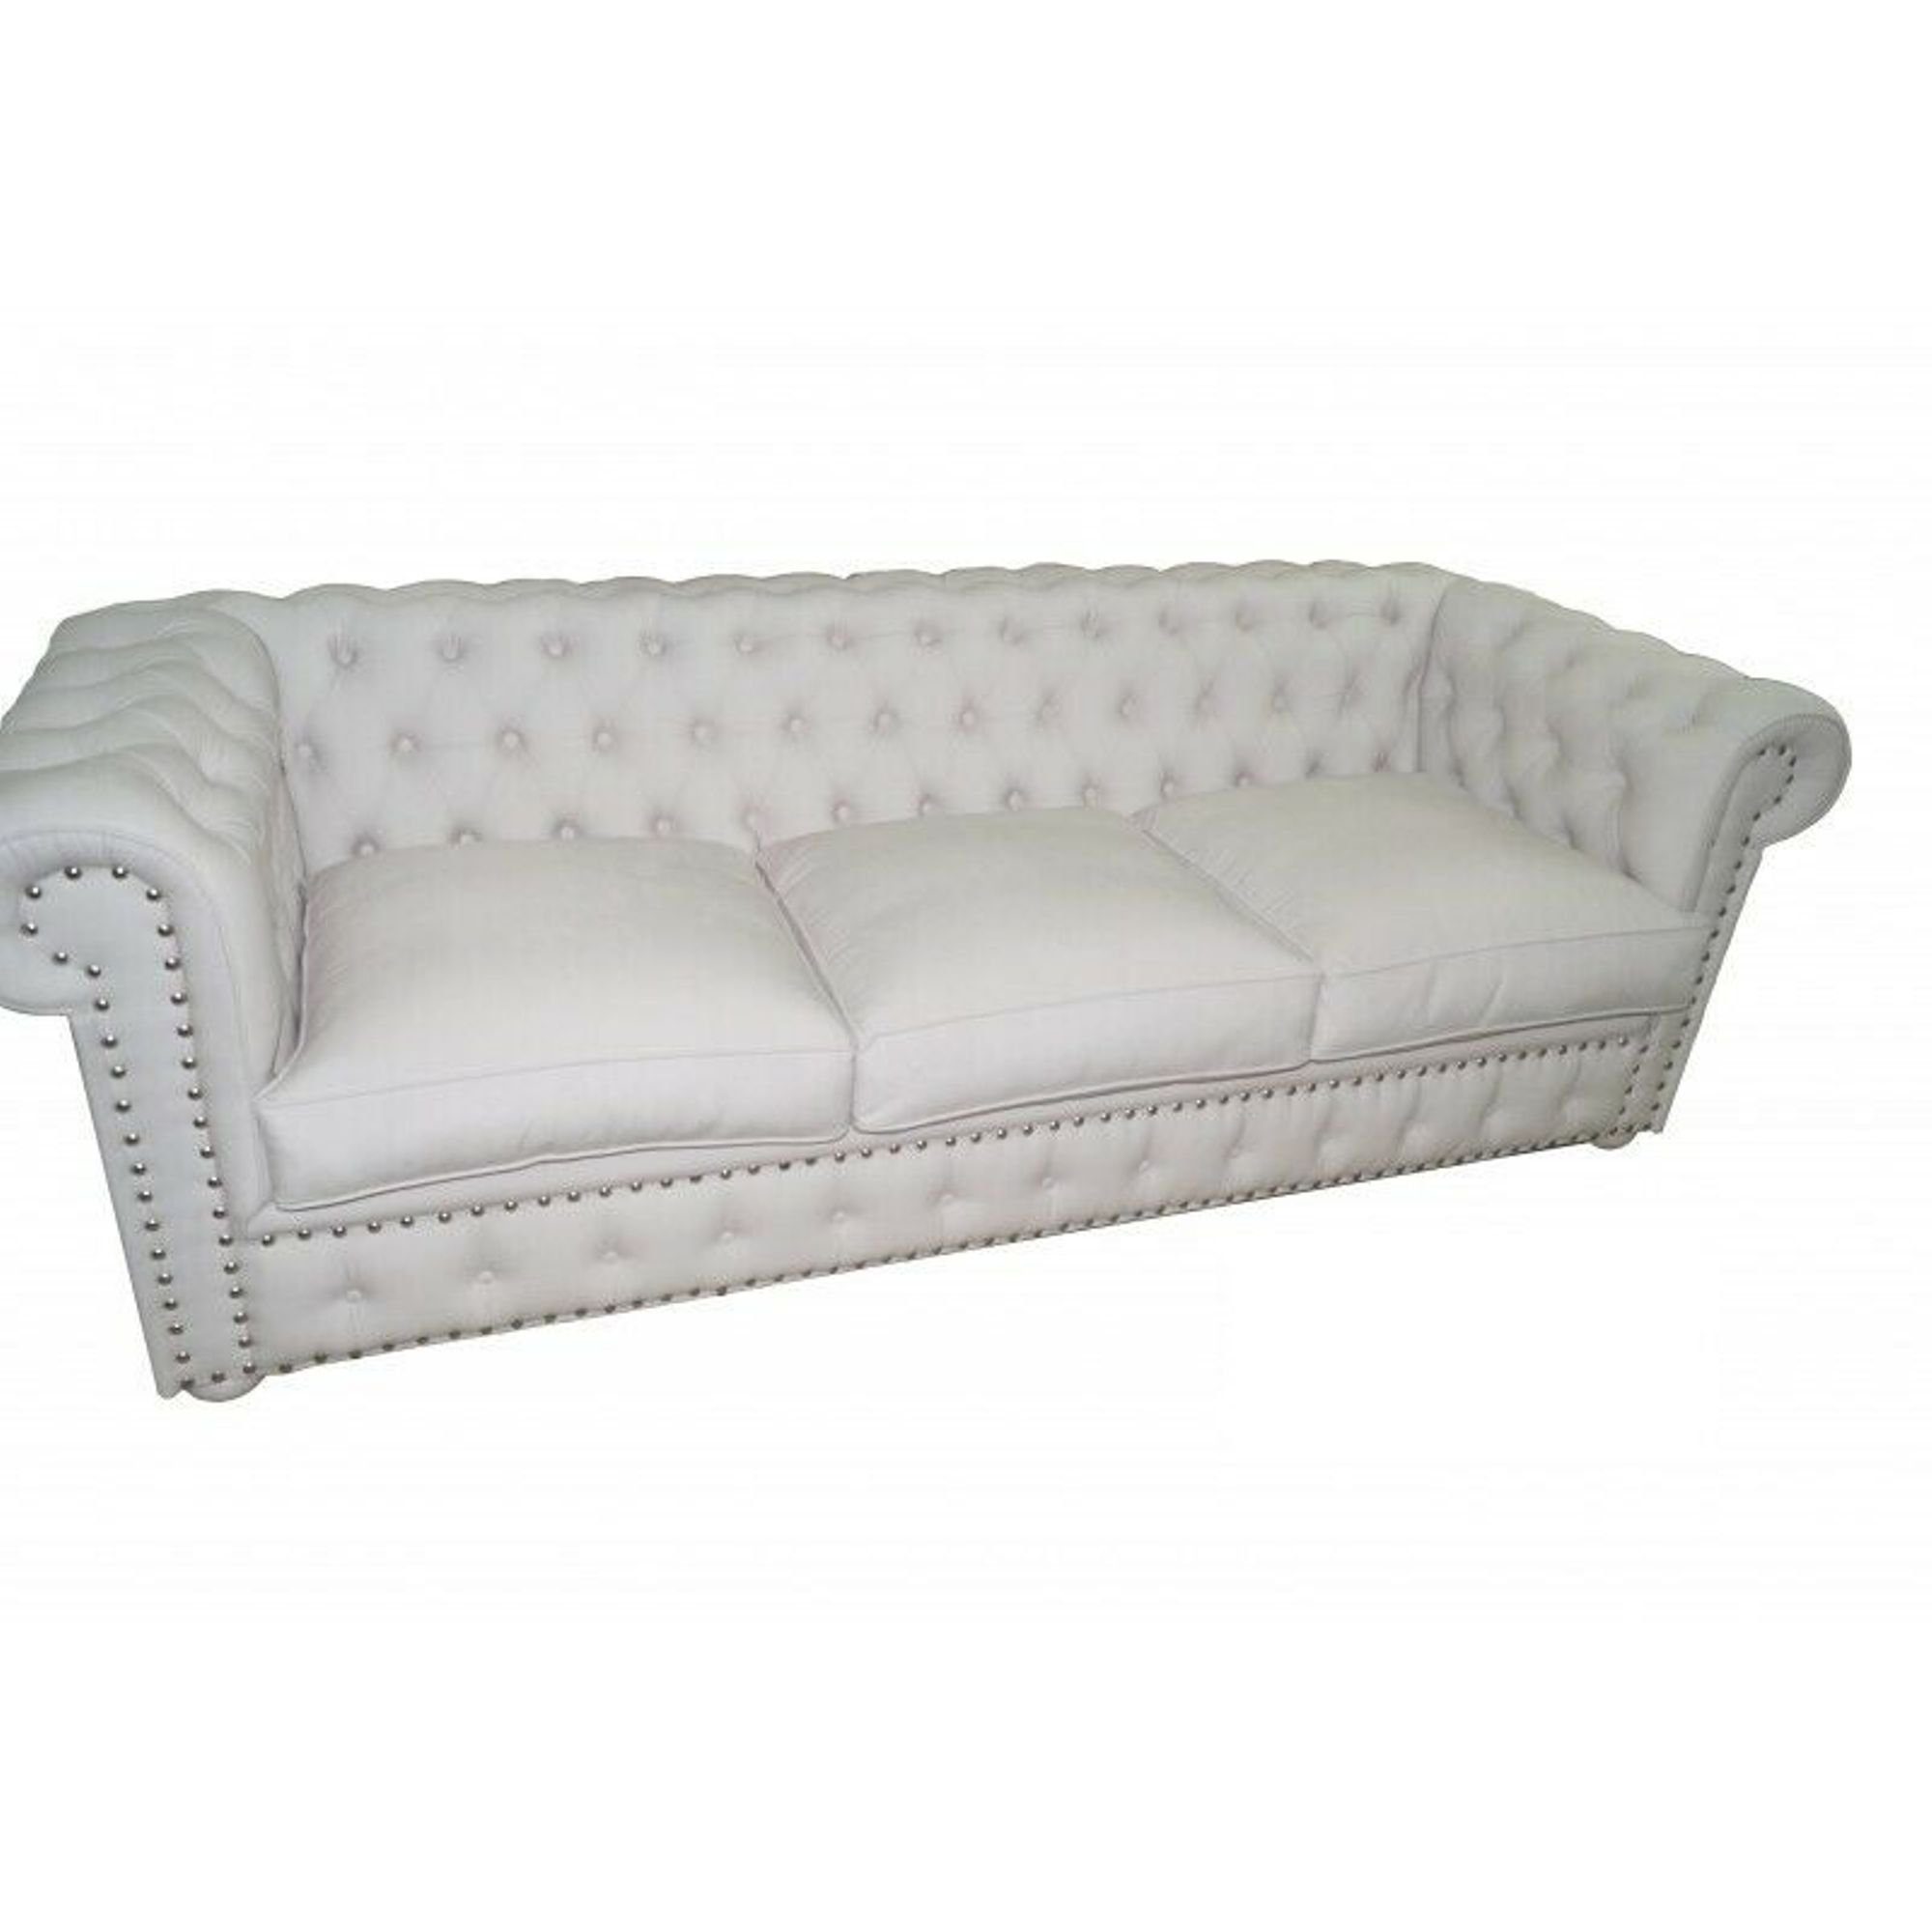 JVmoebel Sofa Weißer Chesterfield Dreisitzer Couch Polster Sofa Design Sofas, Made in Europe